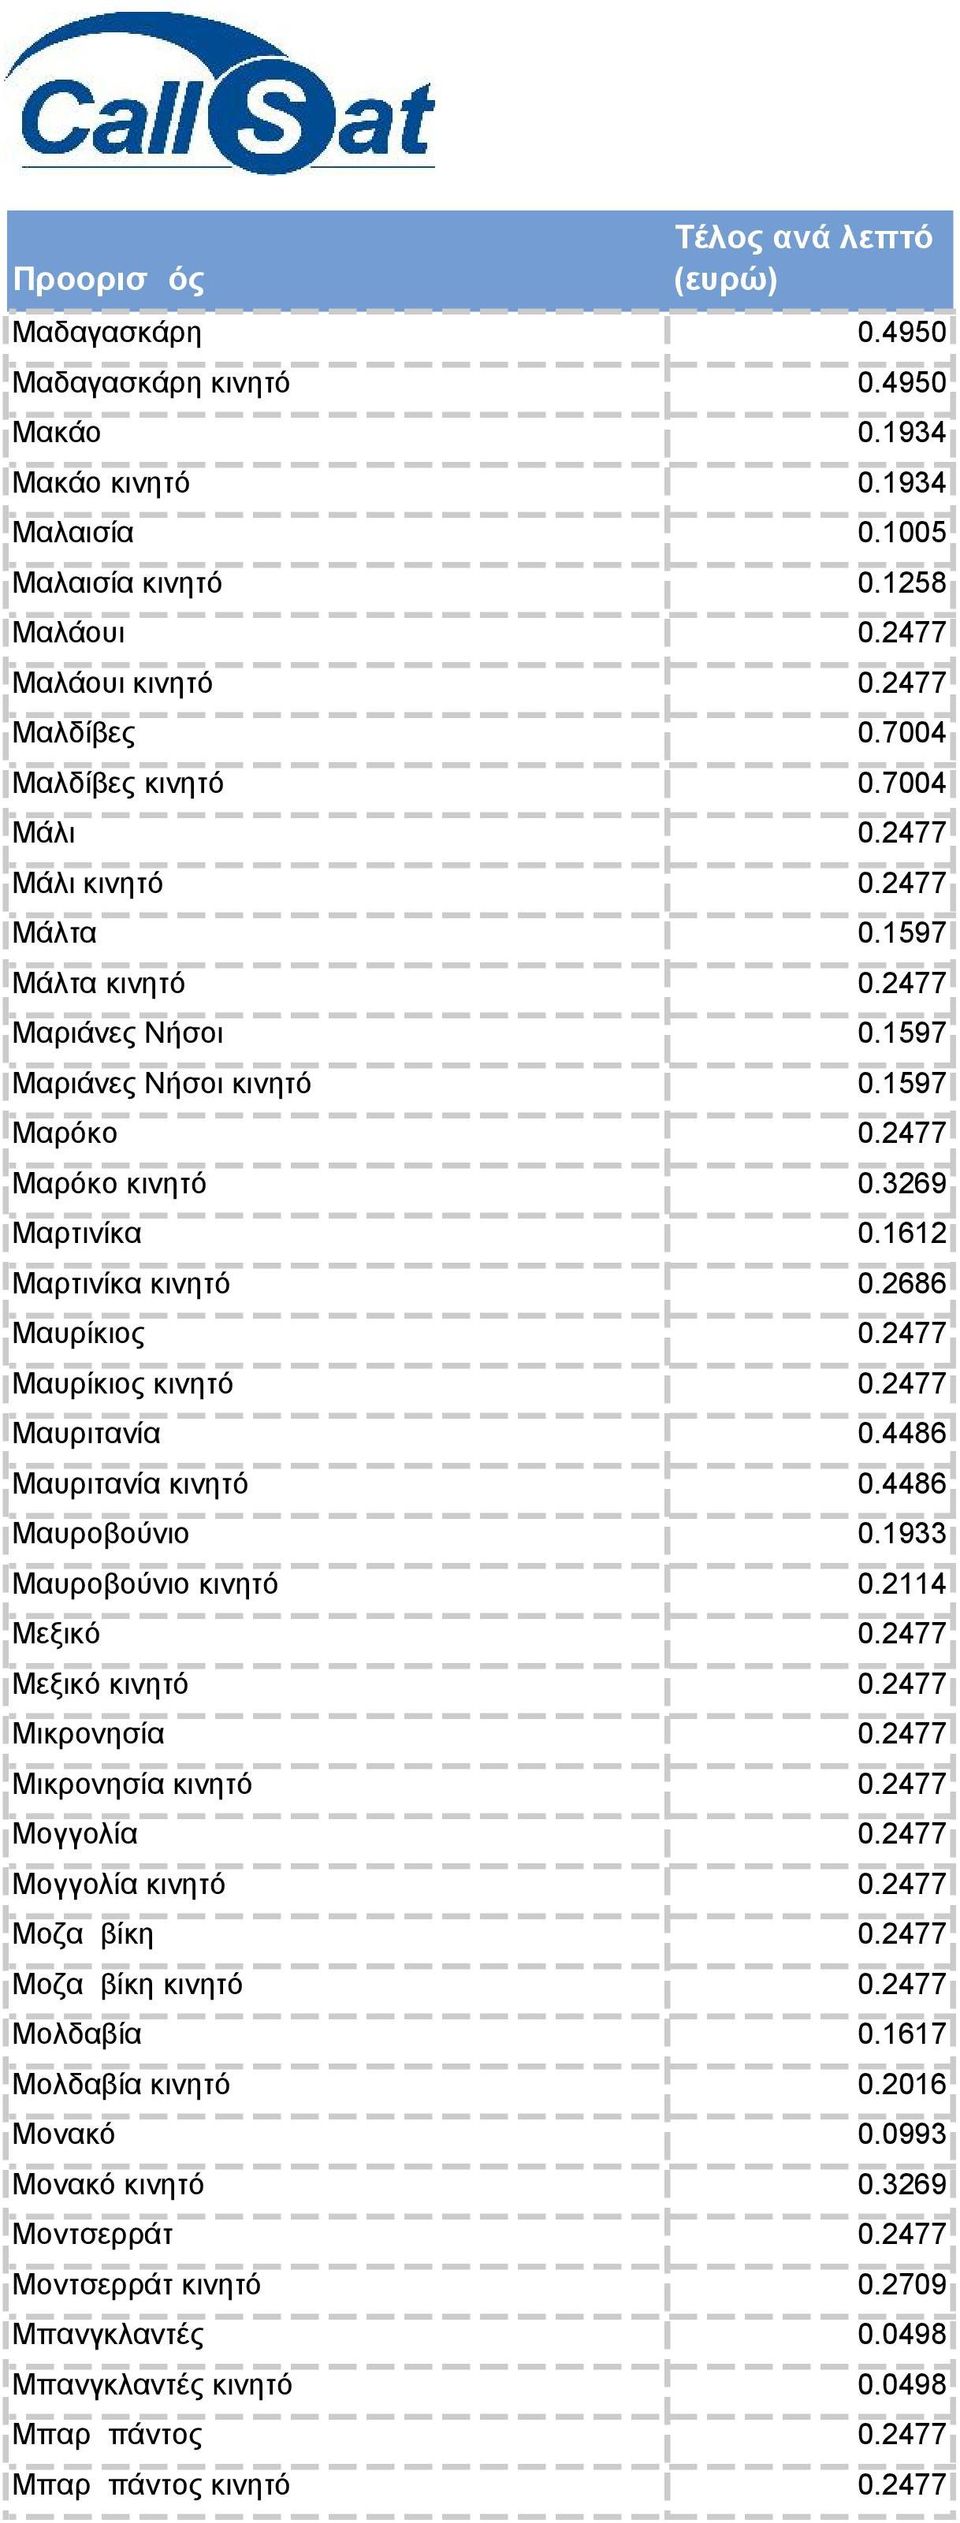 2477 Μαυρίκιος κινητό 0.2477 Μαυριτανία 0.4486 Μαυριτανία κινητό 0.4486 Μαυροβούνιο 0.1933 Μαυροβούνιο κινητό 0.2114 Μεξικό 0.2477 Μεξικό κινητό 0.2477 Μικρονησία 0.2477 Μικρονησία κινητό 0.